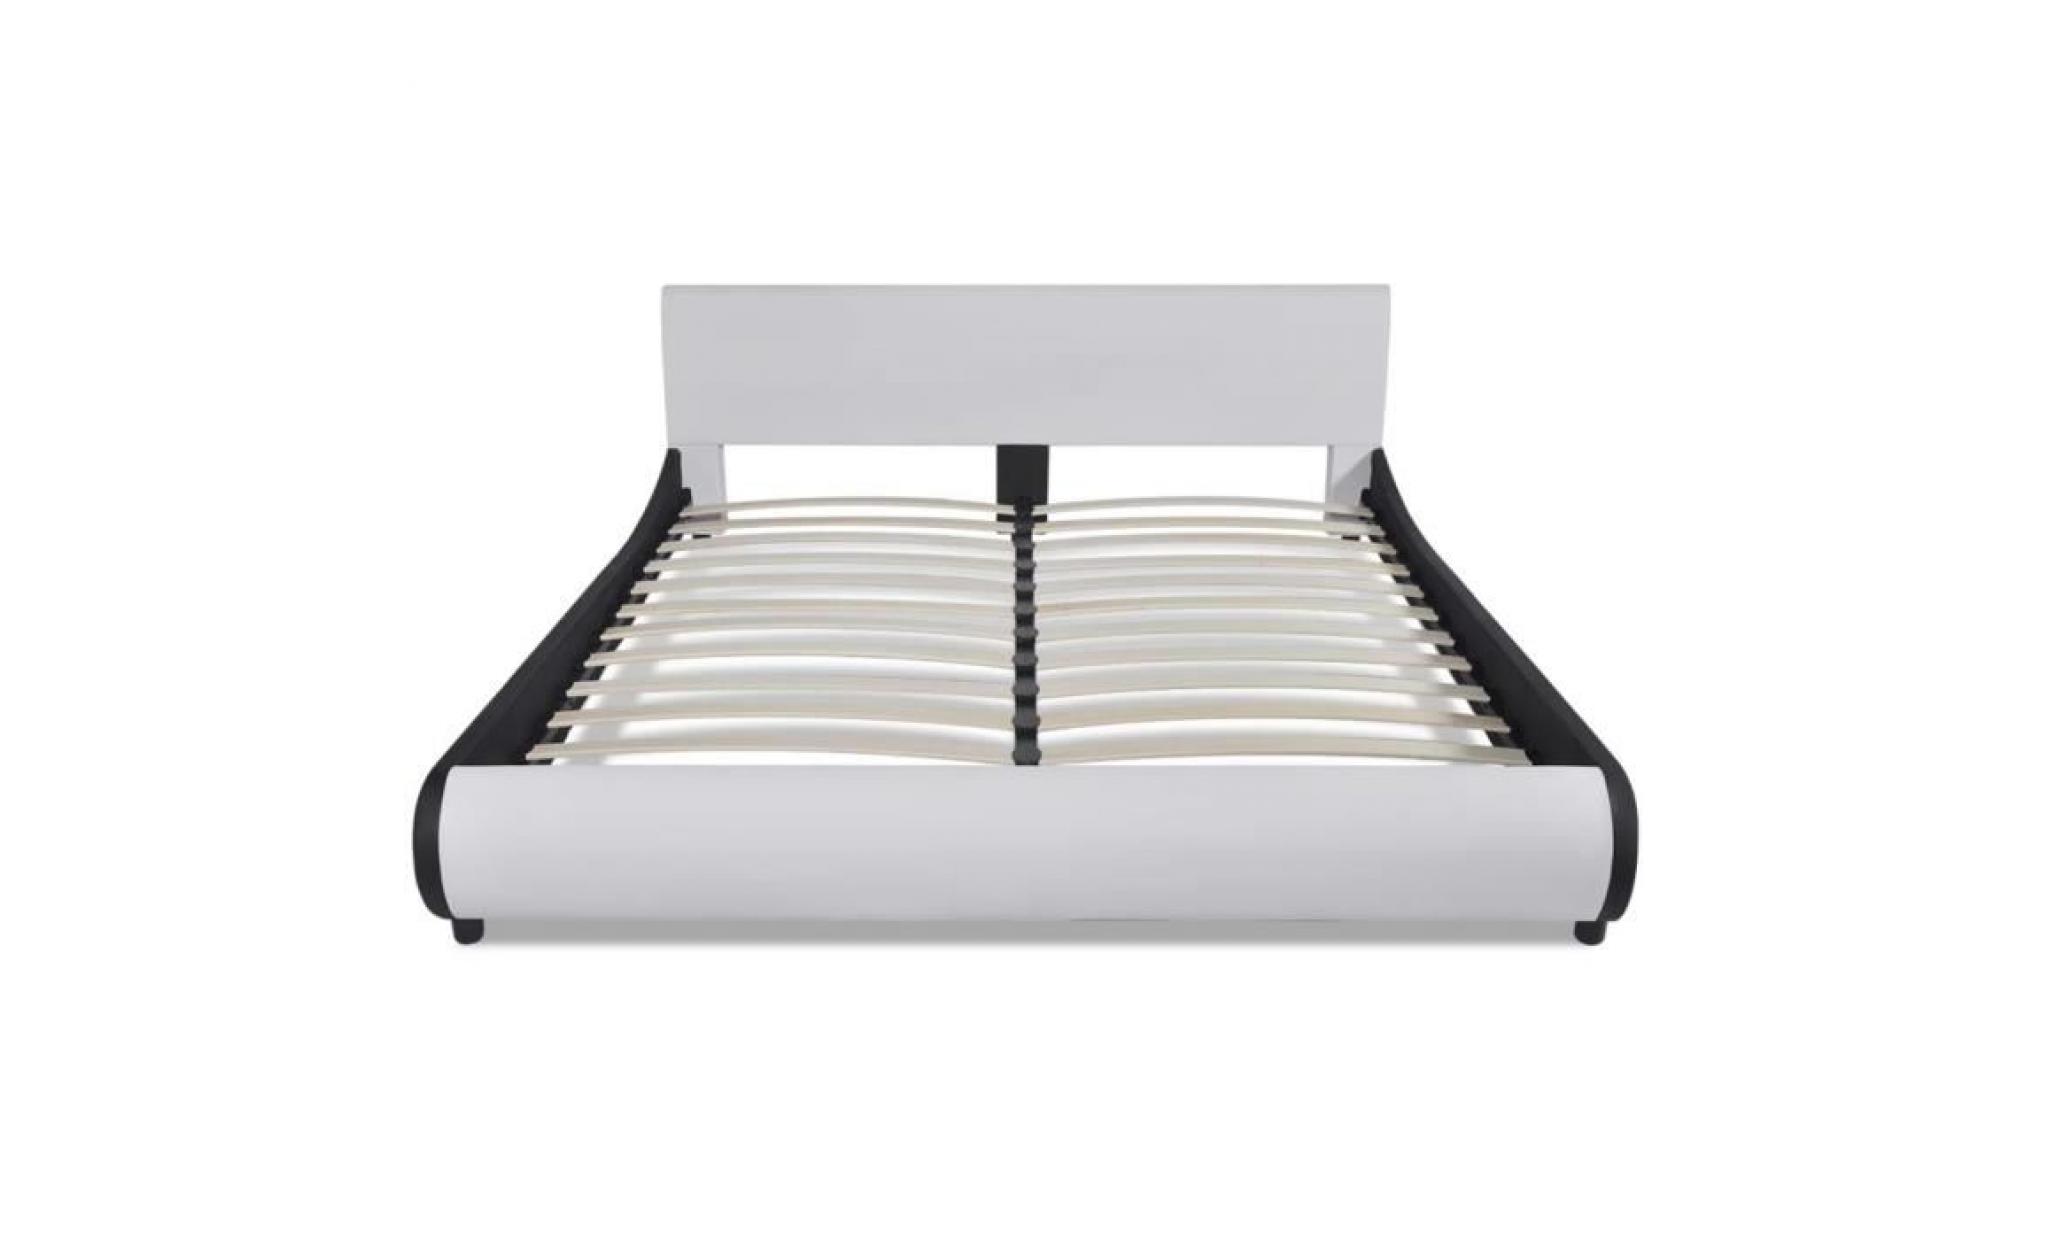 lit 180 x 200 cm structure de lit lit adulte lit enfant lit contemporain scandinave cuir artificiel blanc pas cher